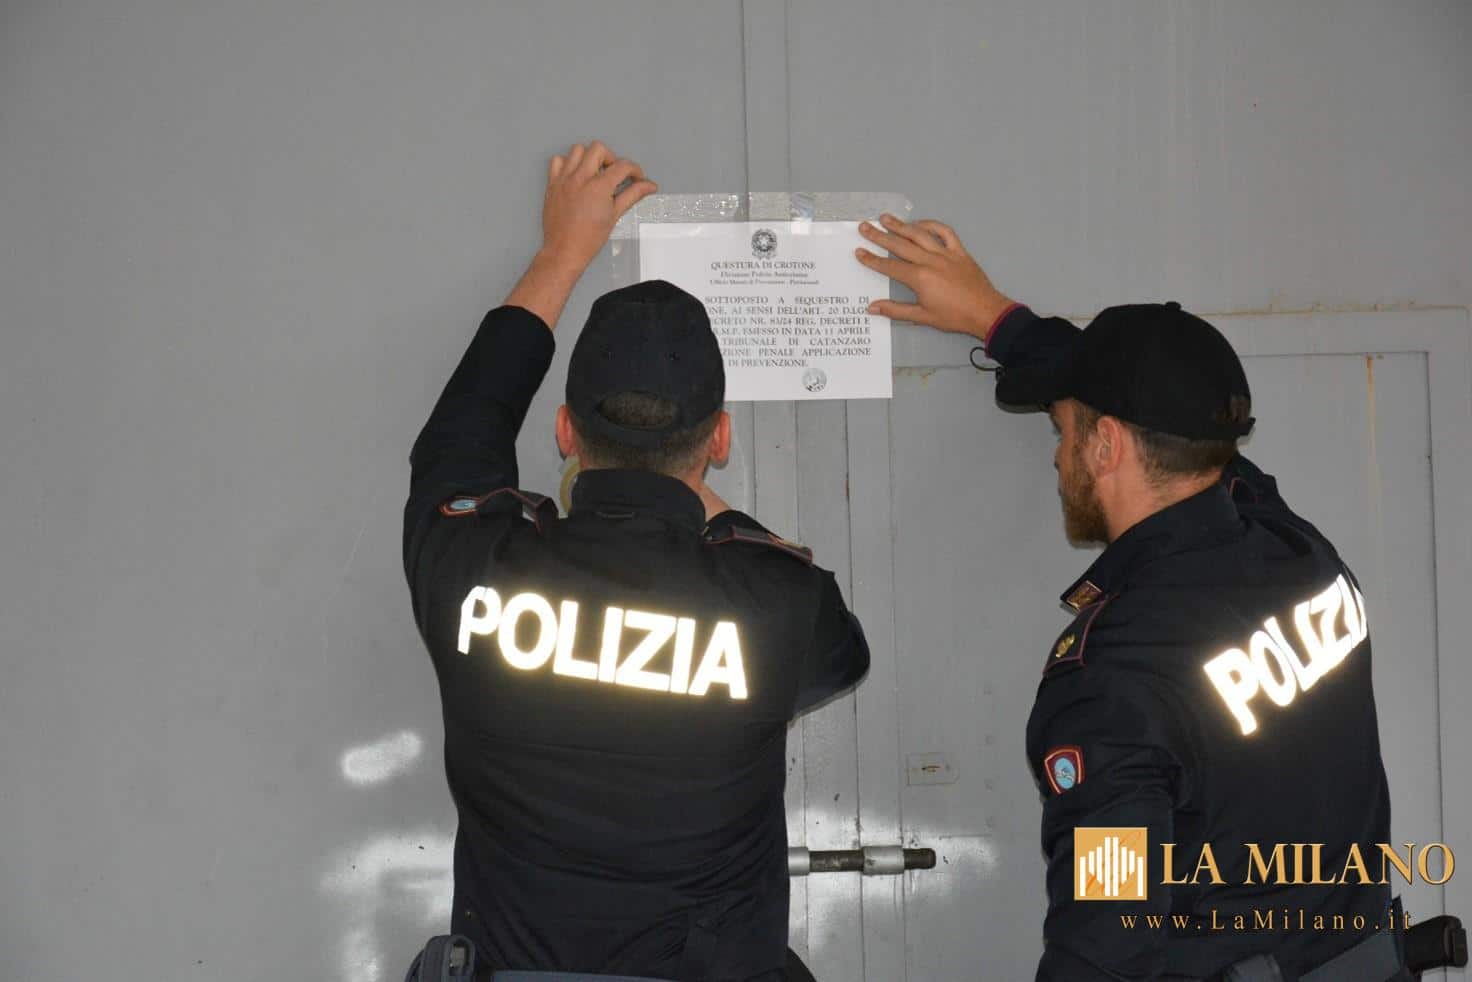 Crotone, sproporzioni nella dichiarazione dei redditi: la Polizia di Stato esegue un provvedimento di sequestro patrimoniale